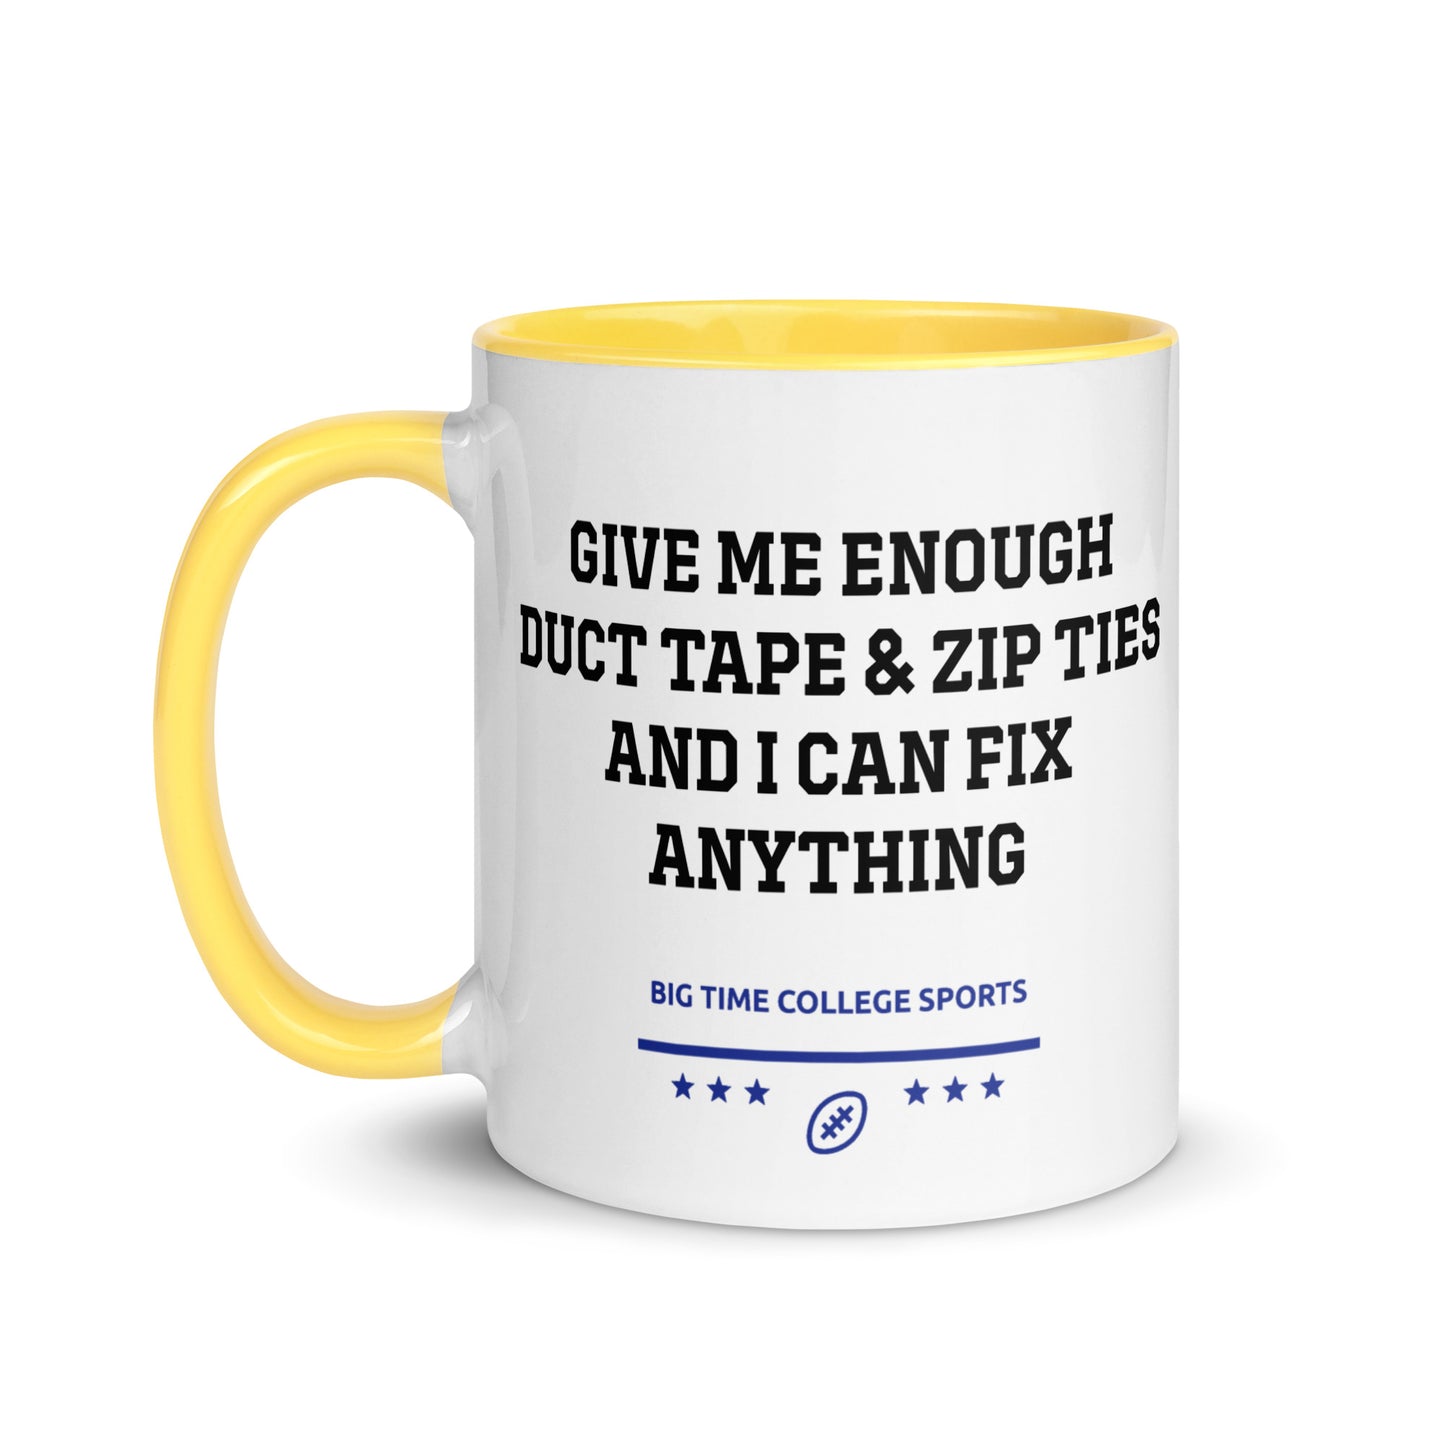 Duct Tape & Zip Ties Mug